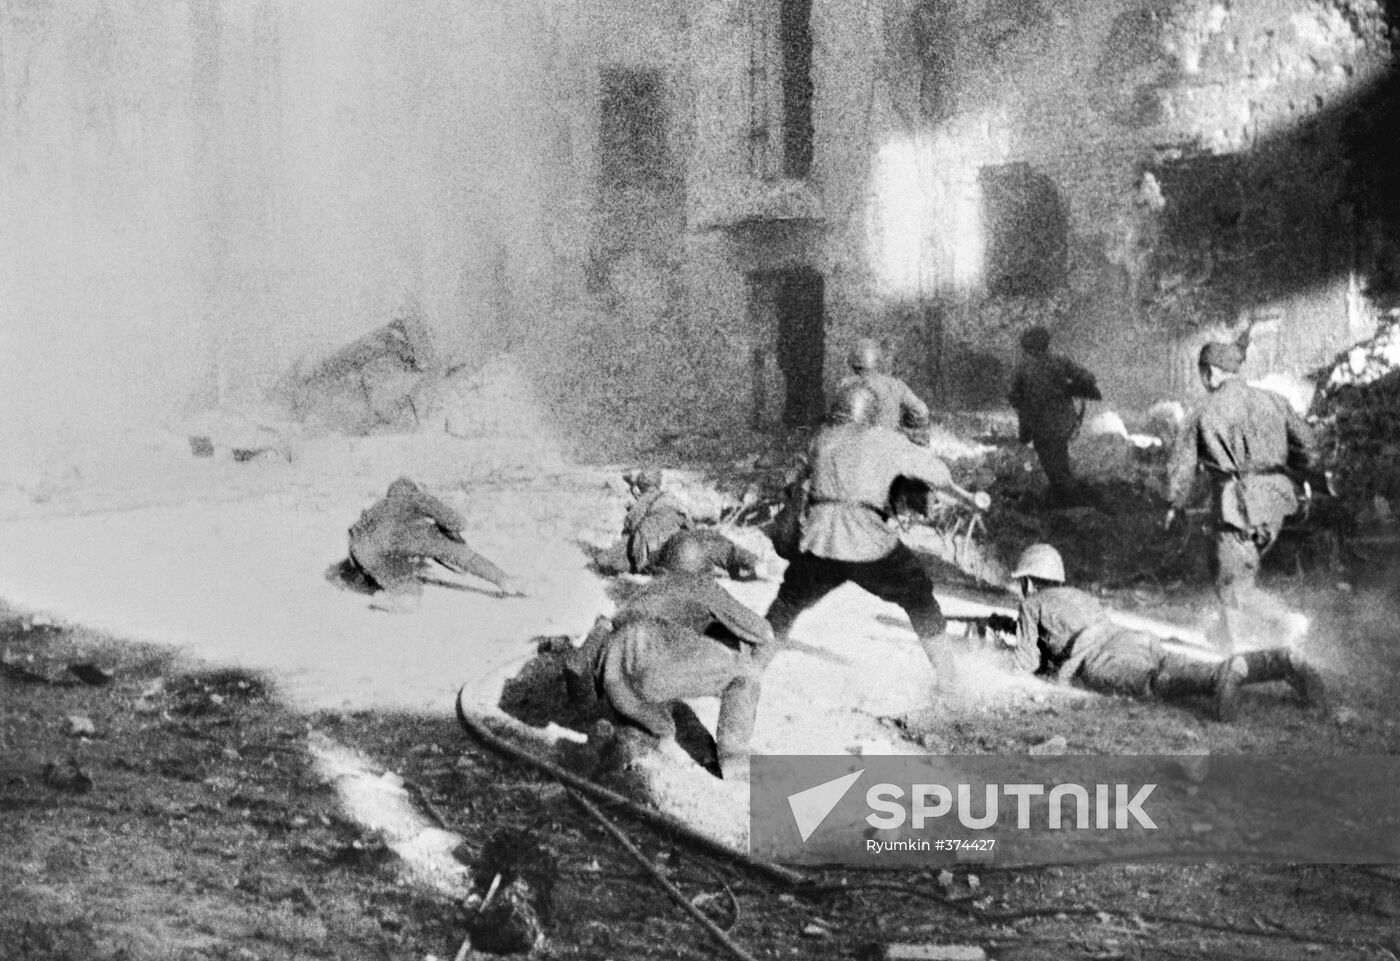 Battle in Stalingrad in 1942